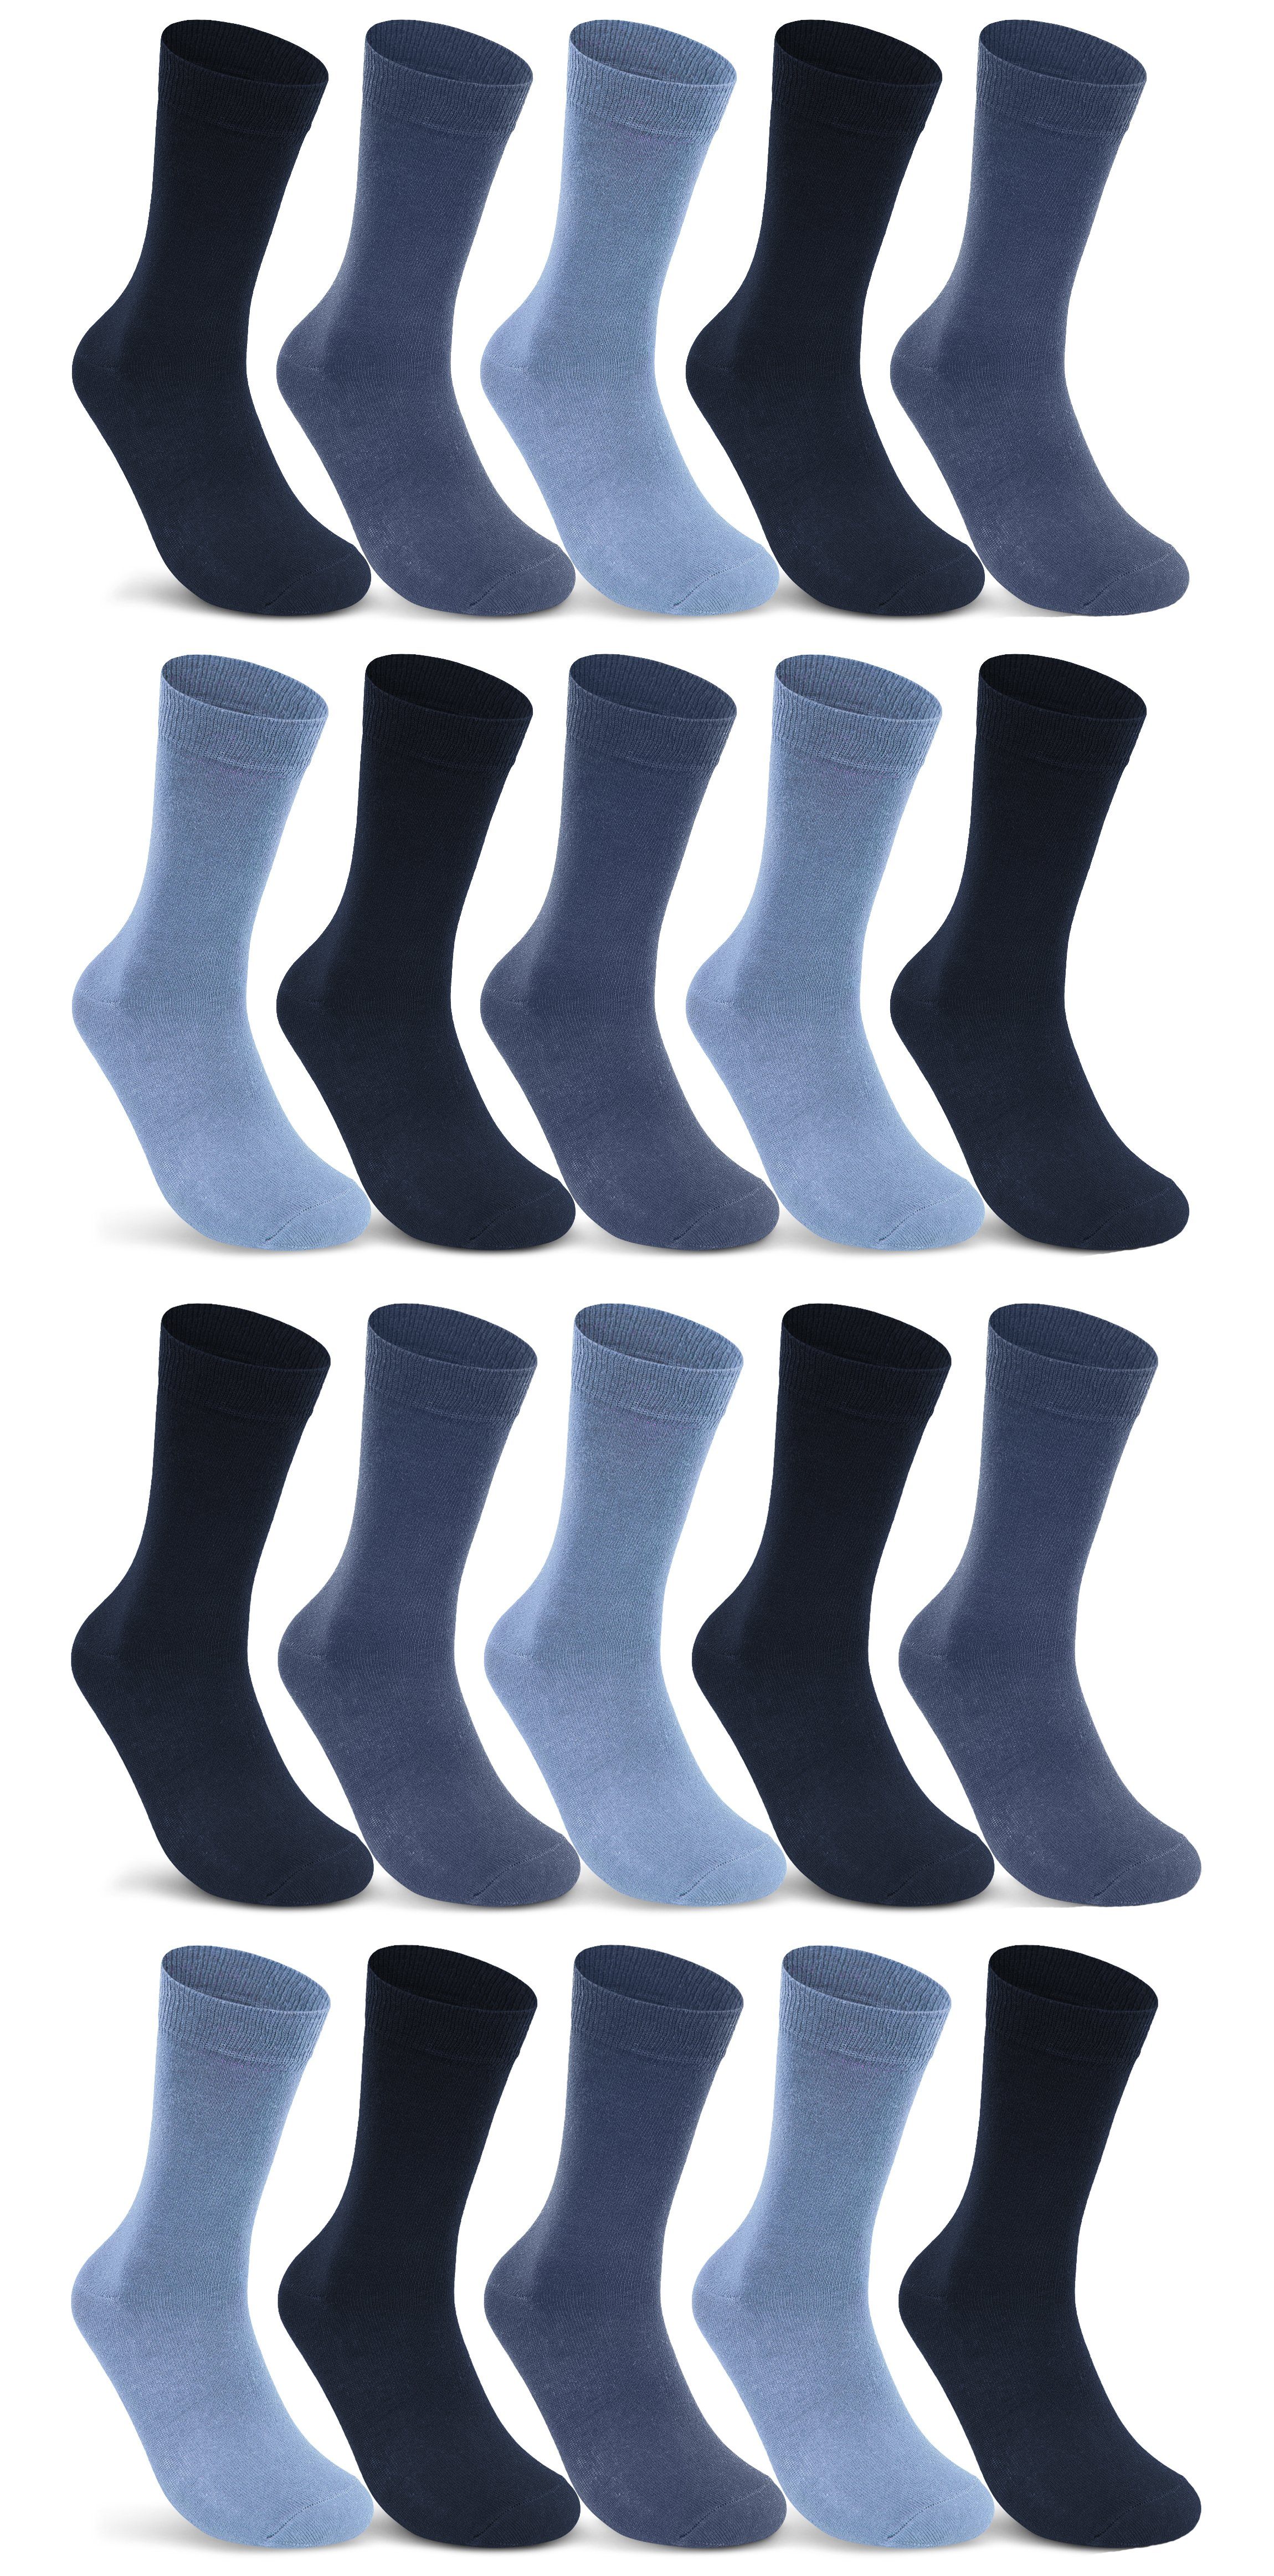 sockenkauf24 Socken 10 I 20 I 30 Paar Damen & Herren Business Socken Baumwolle (Jeans, Navy, Blau, 20-Paar, 35-38) mit Komfortbund Strümpfe - 10700